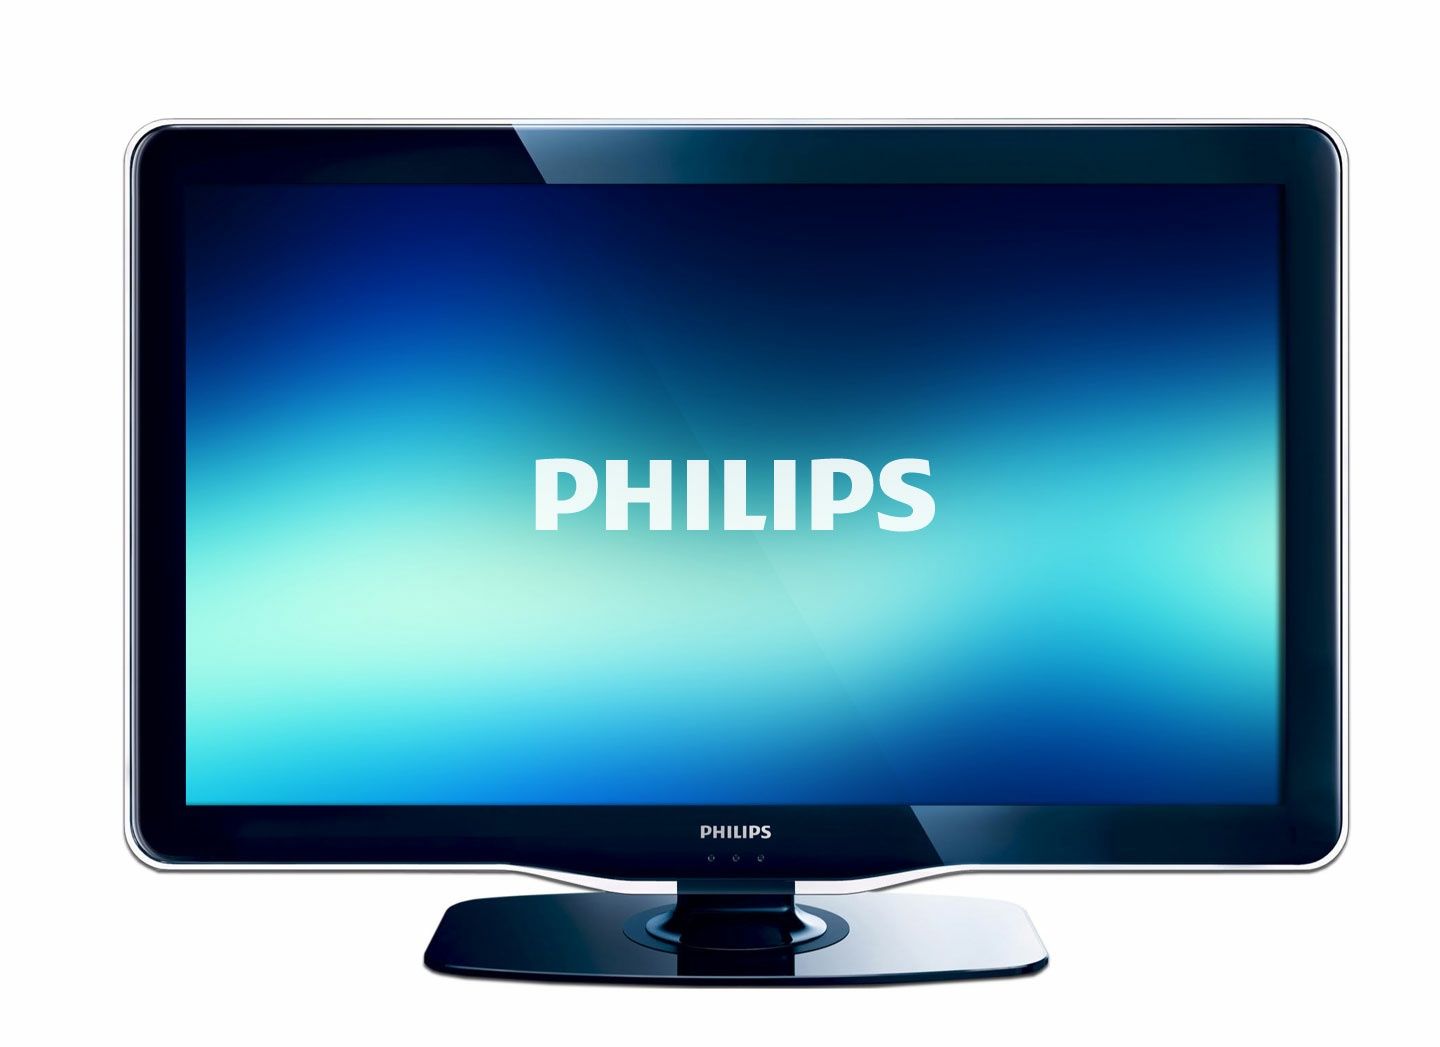 Дешево! 82см. LED-телевизор Philips 32PFL3507 FullHD 100Гц